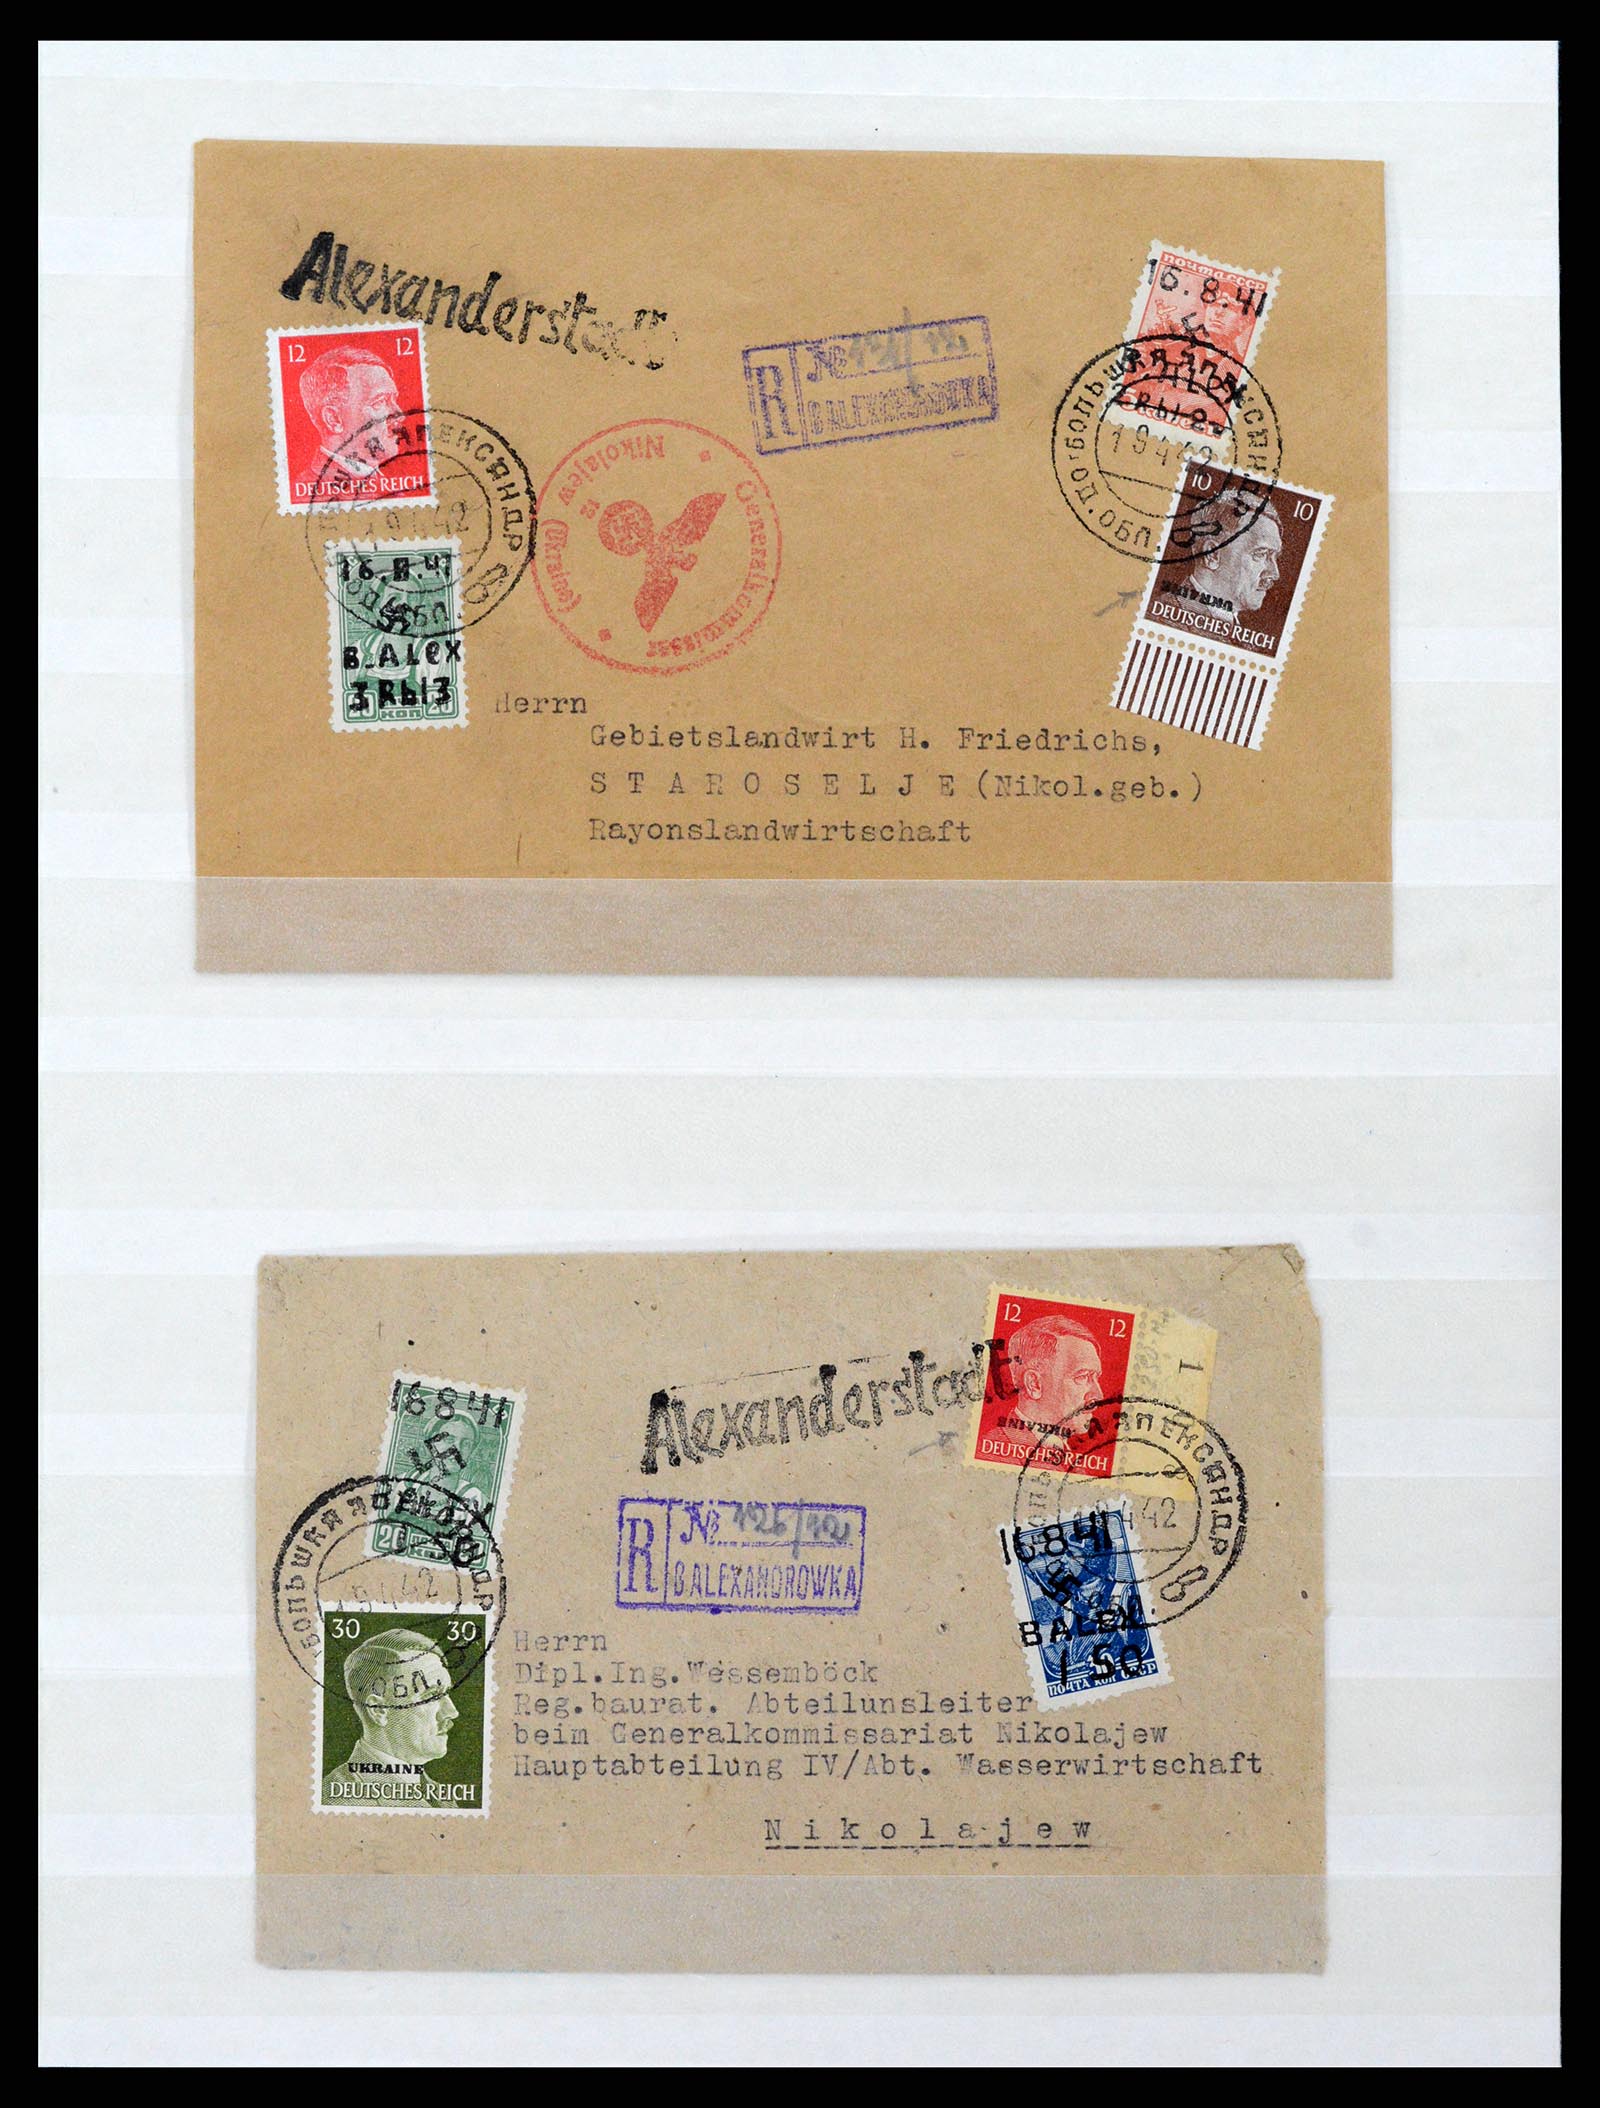 37690 011 - Stamp collection 37690 German occupation 2nd worldwar 1939-1945.